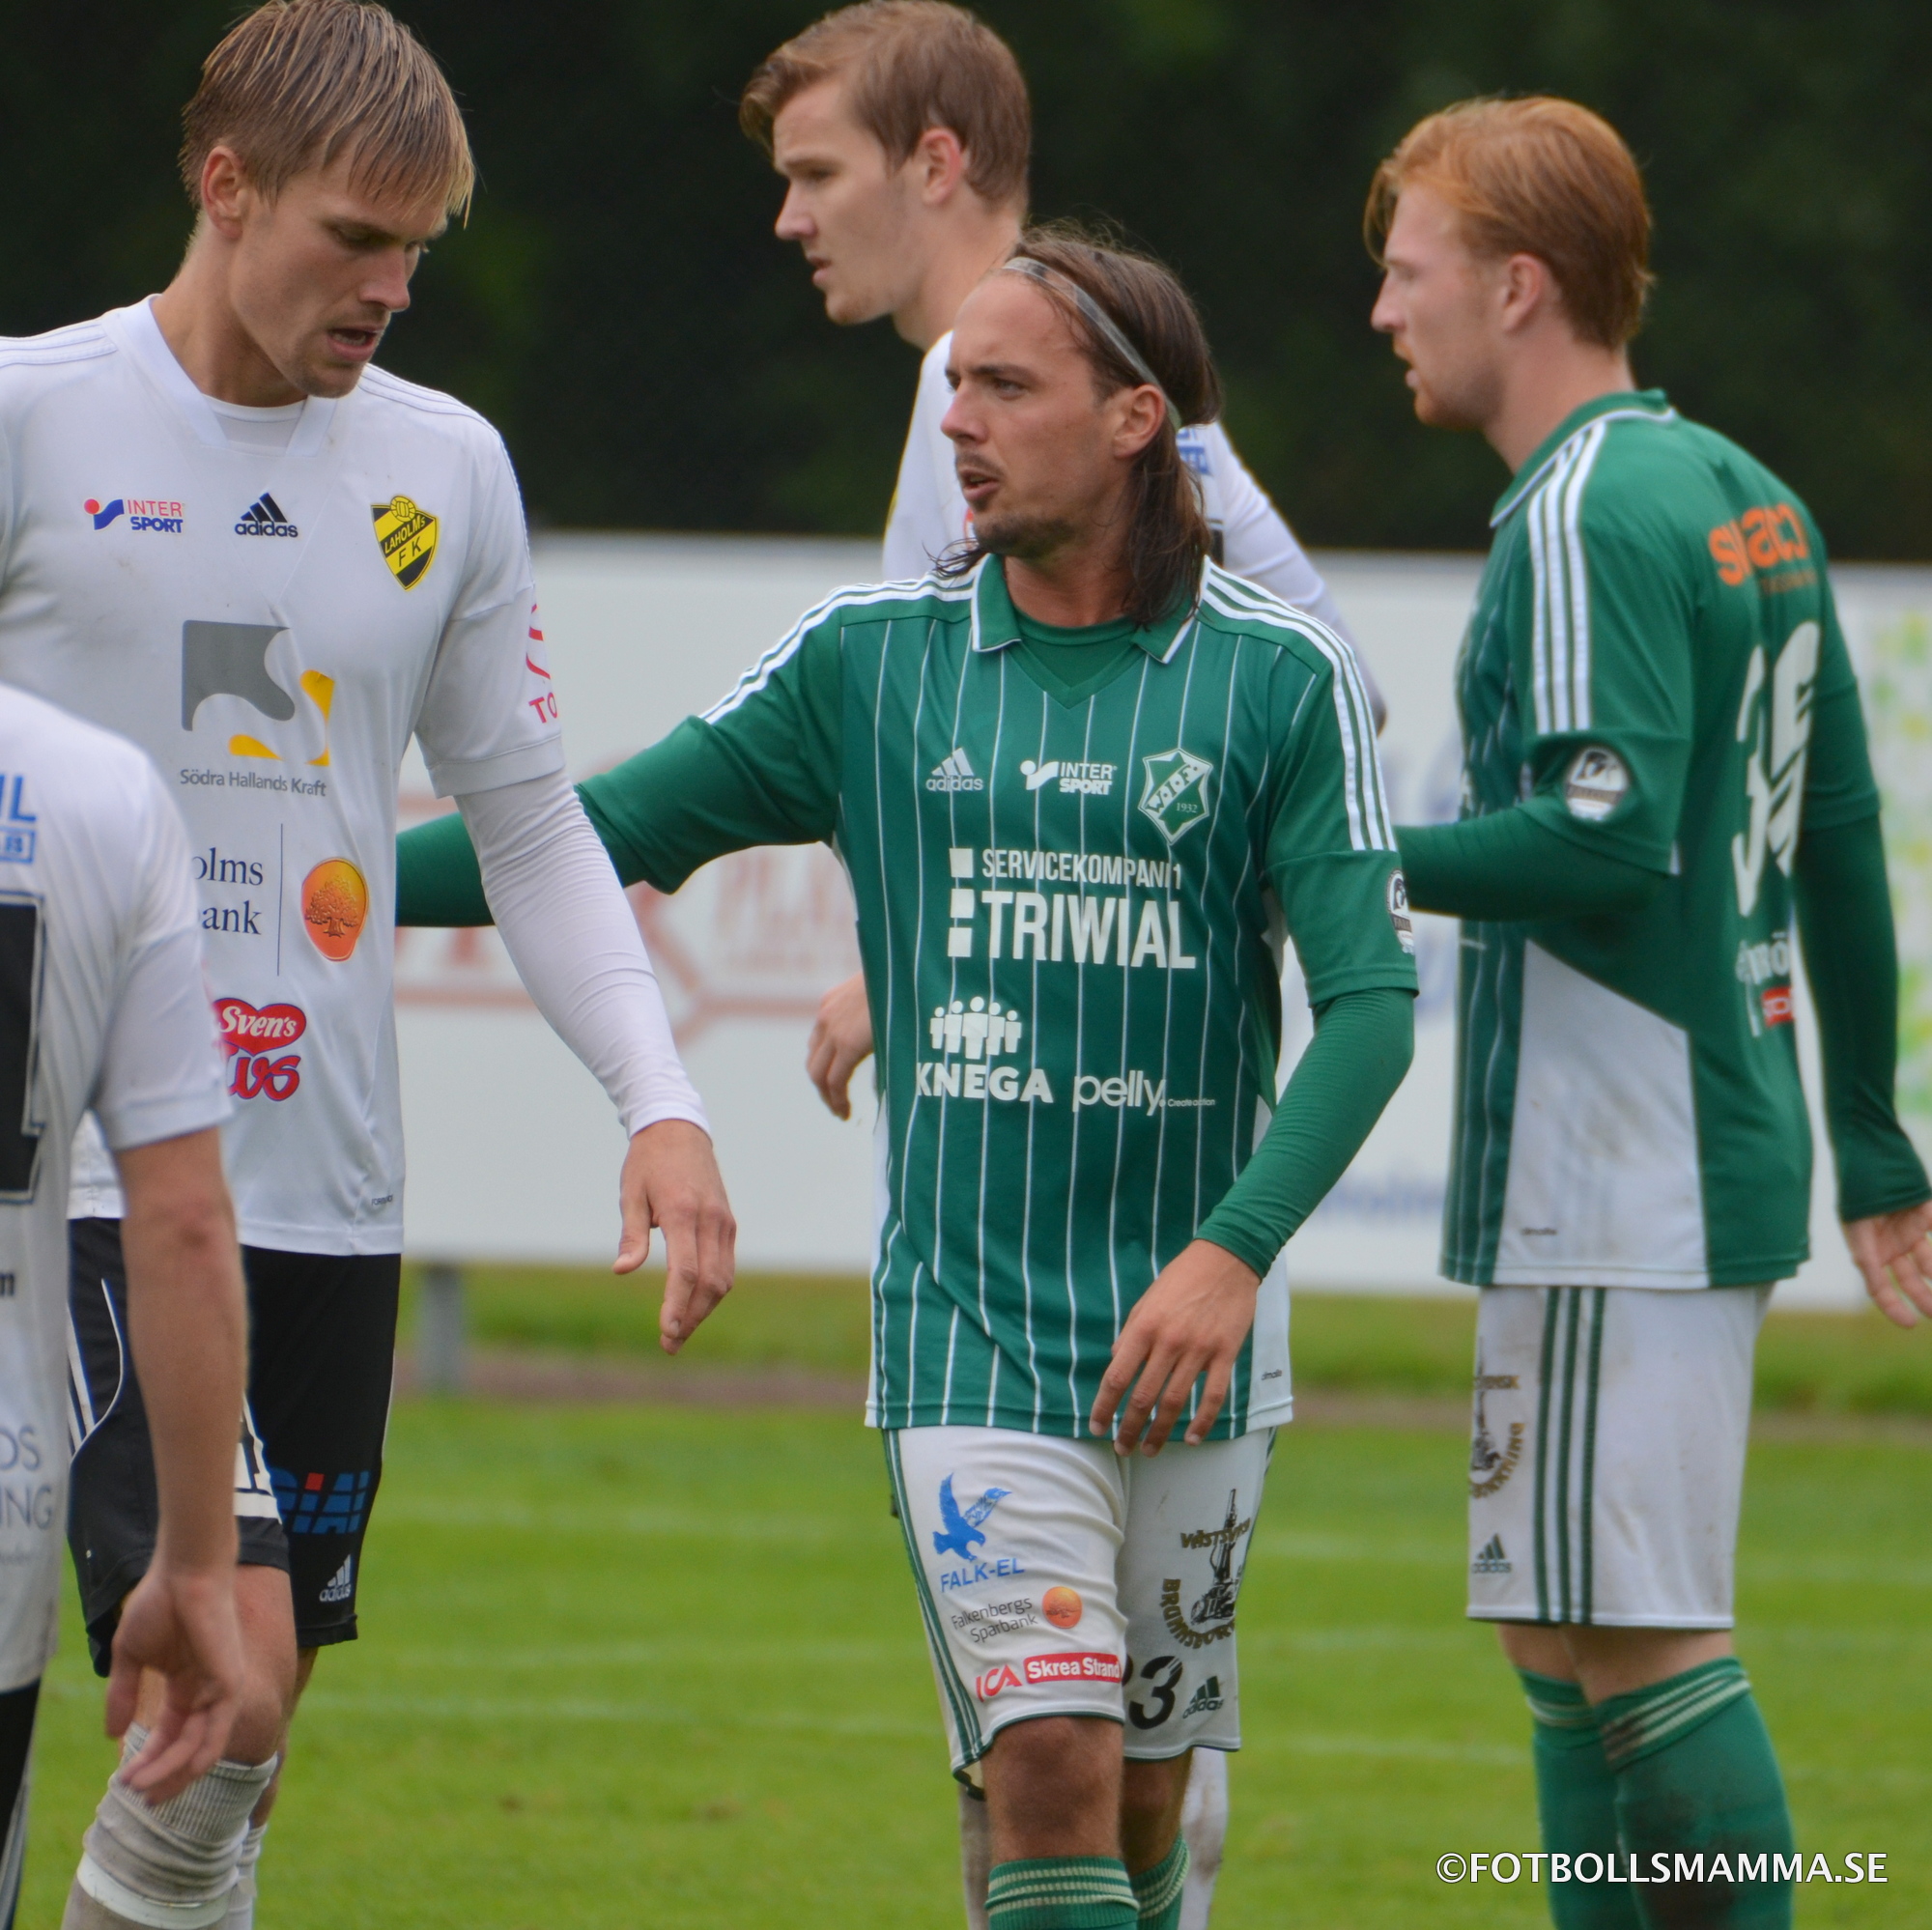 Laholms FK – Vinbergs IF 0-1